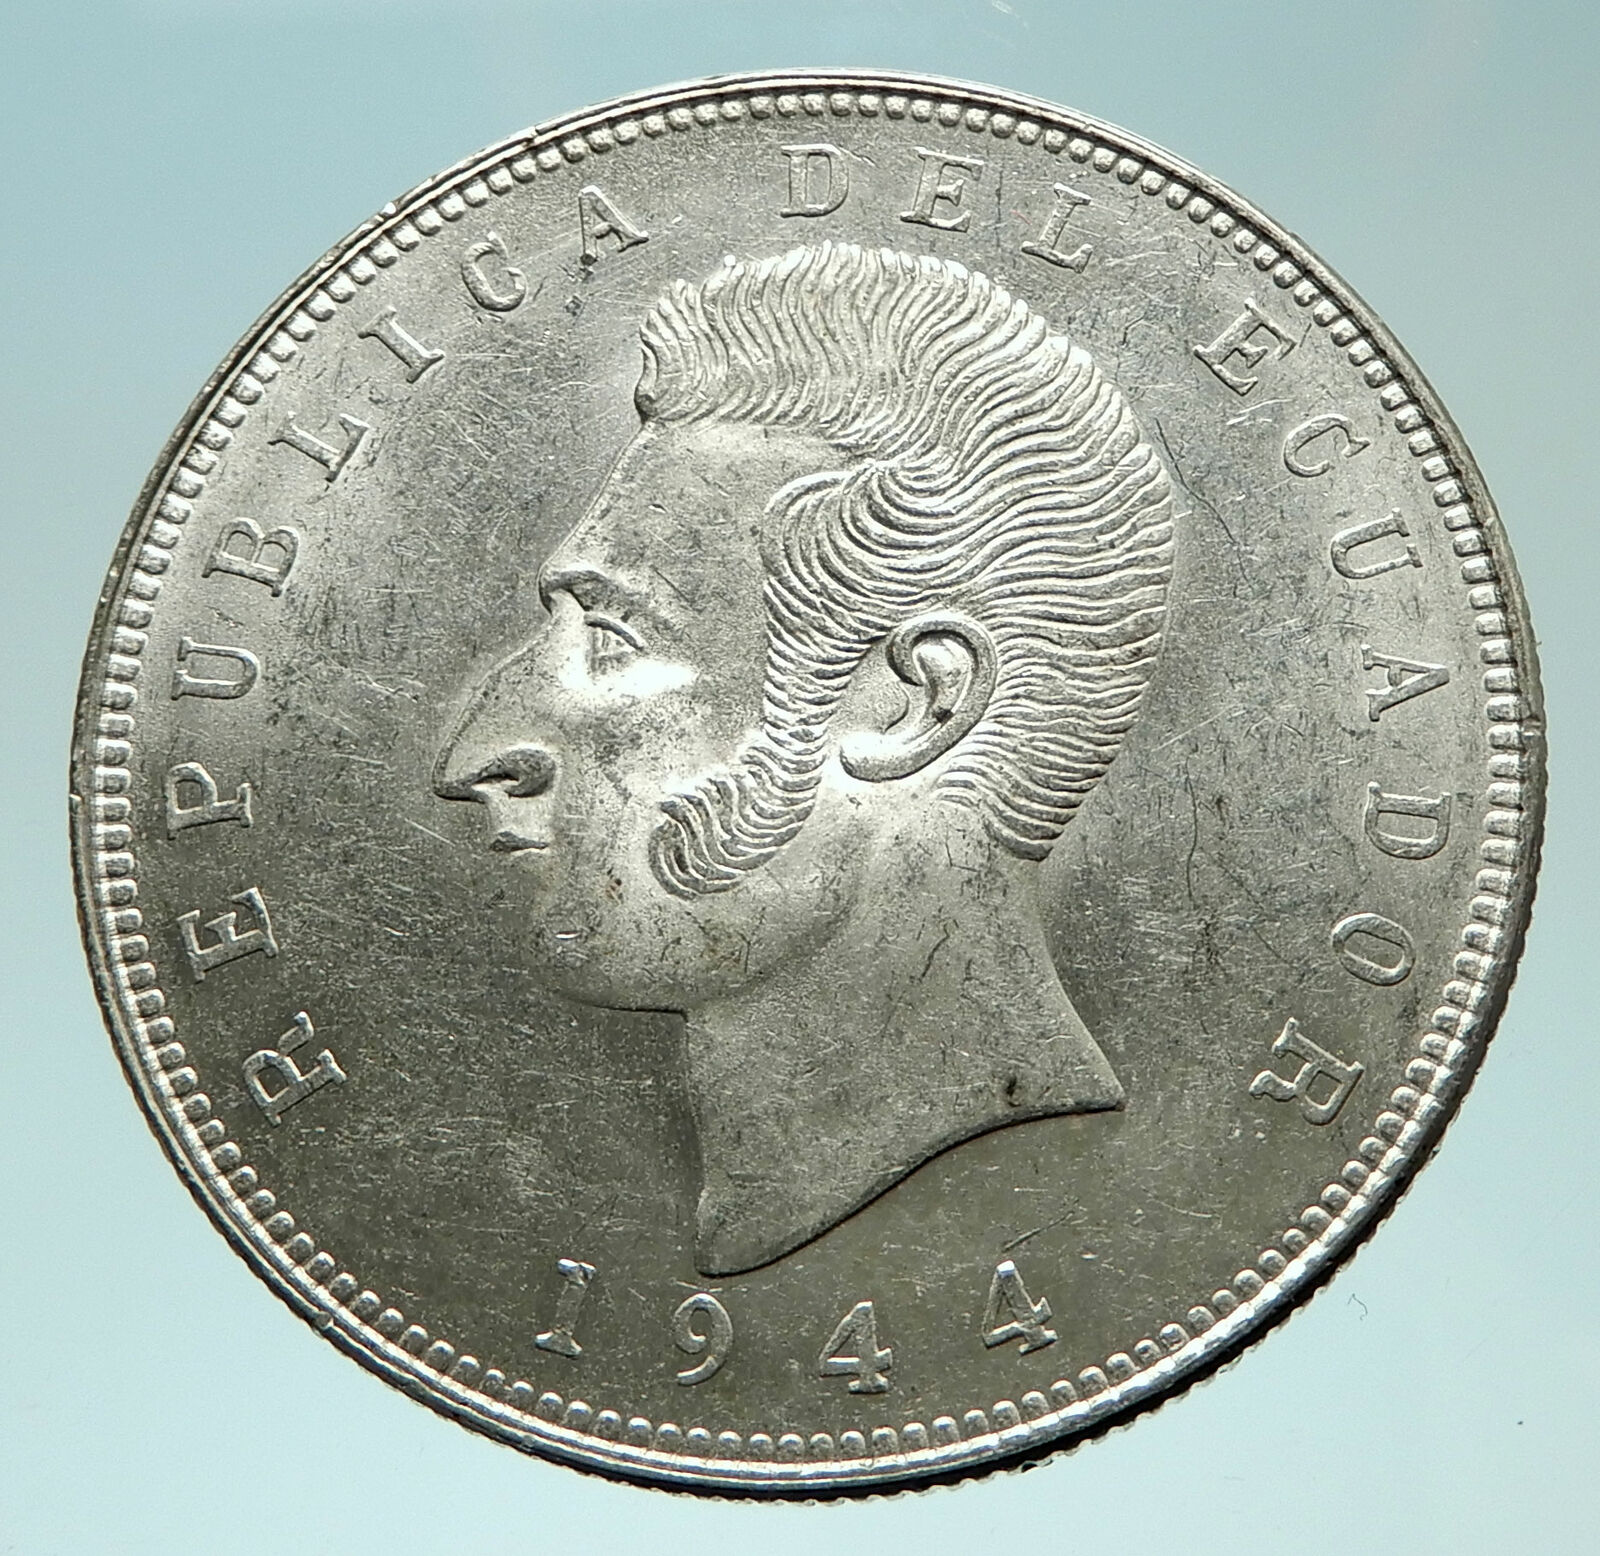 1944 ECUADOR Antonio Jose de Sucre y Alcala Antique Silver 5 Sucres Coin i76034